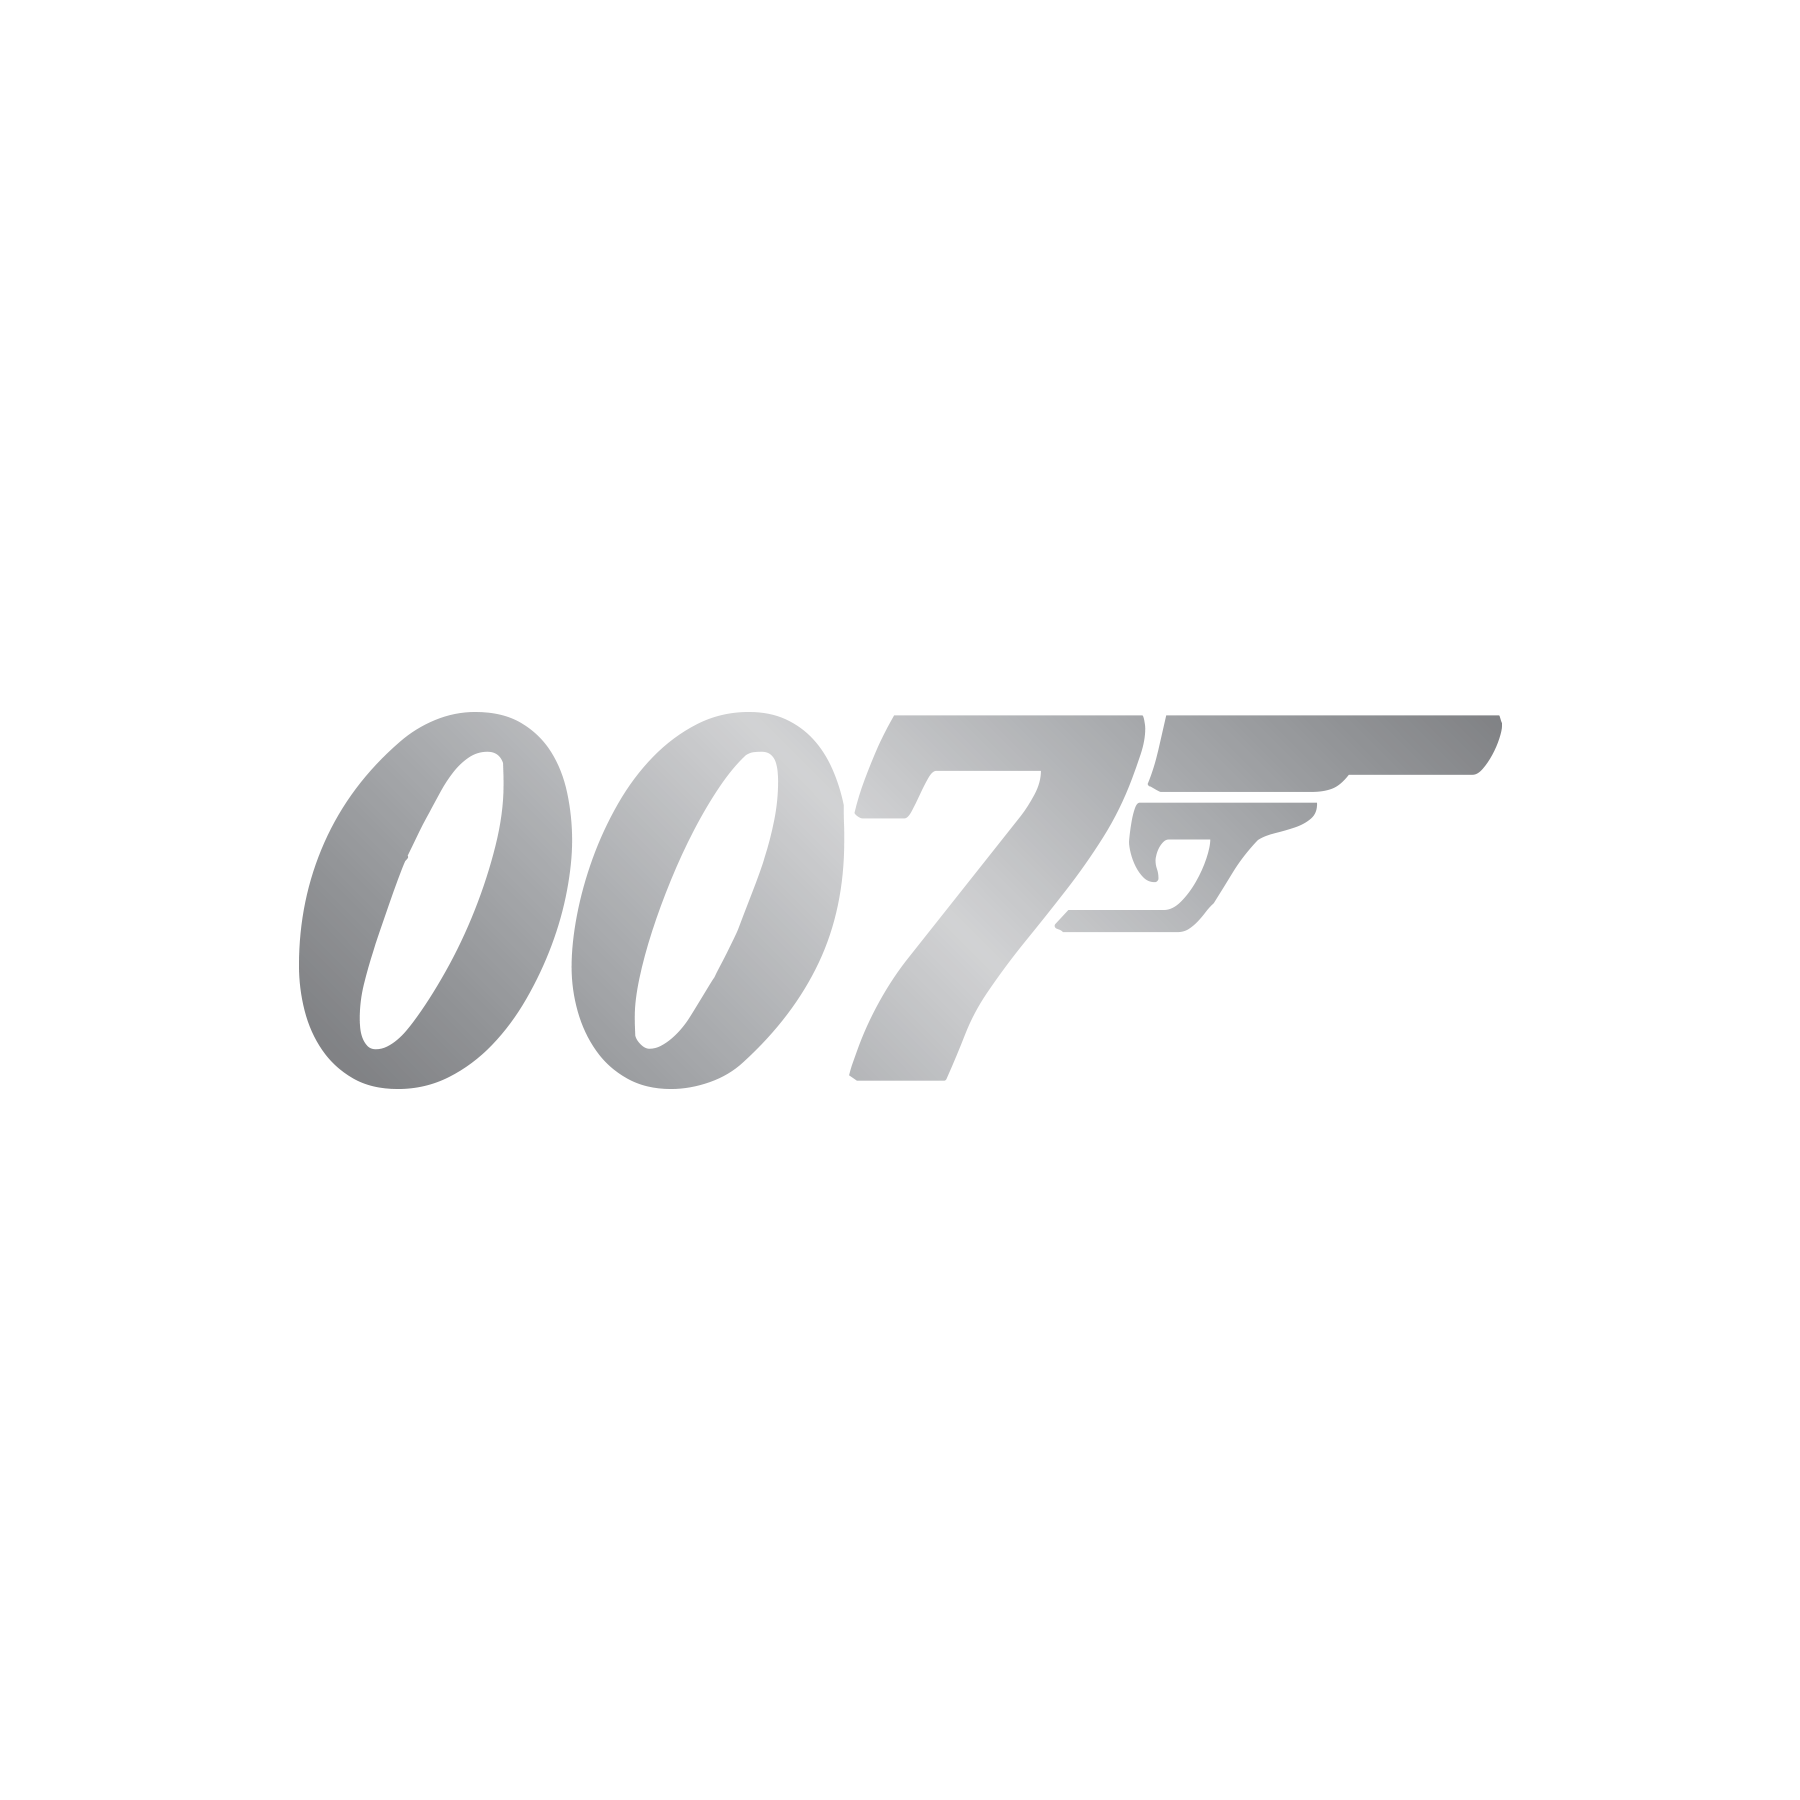 James Bond Films | James Bond Wiki | Fandom